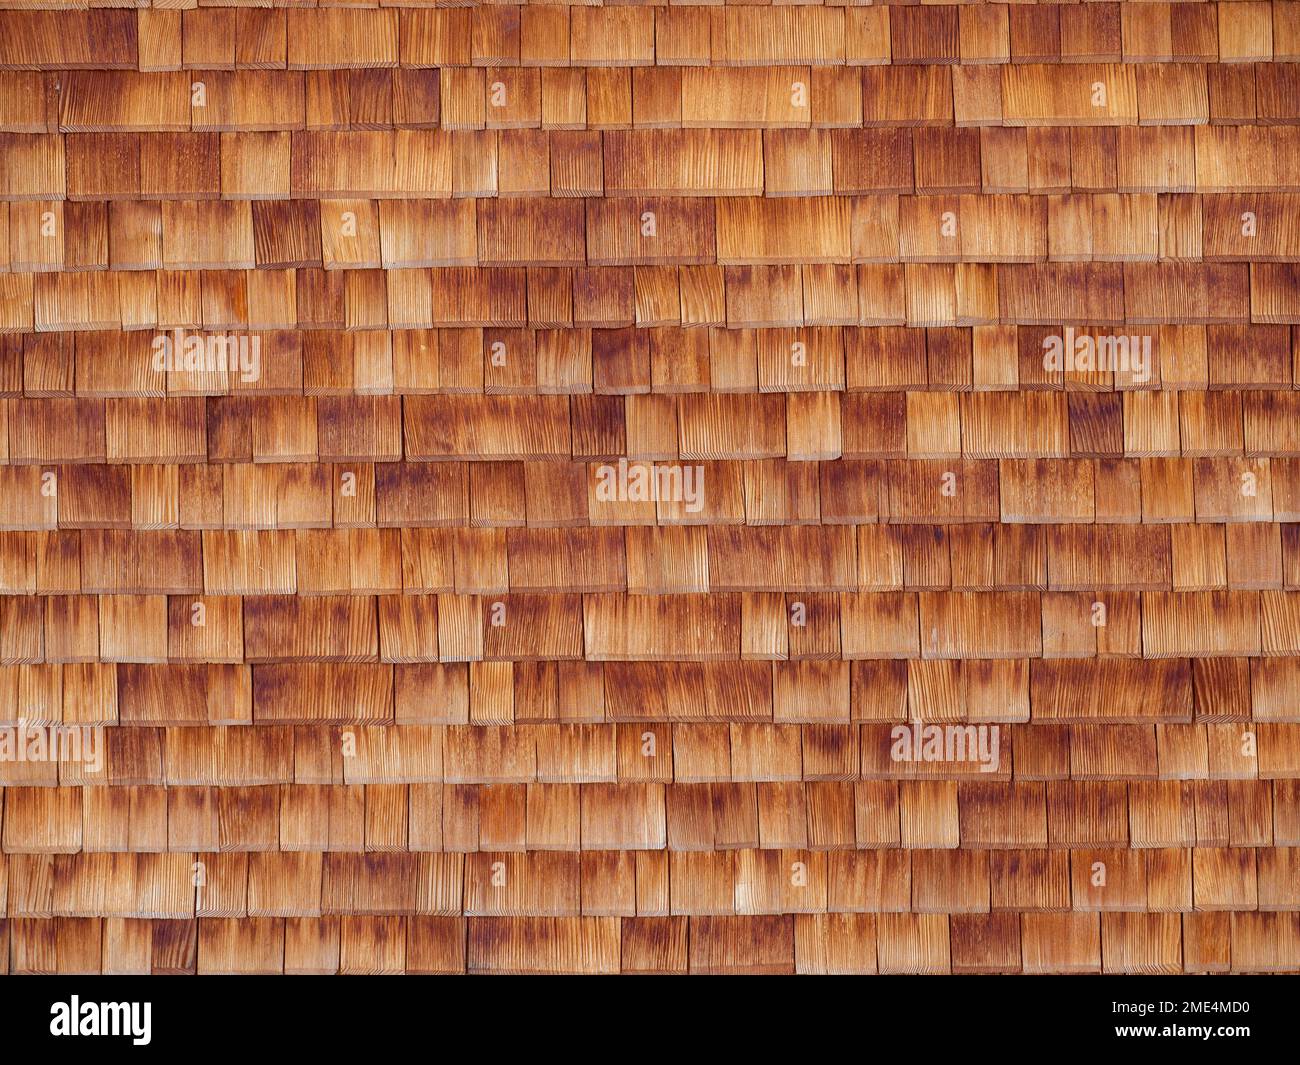 Full frame of wooden paneling Stock Photo